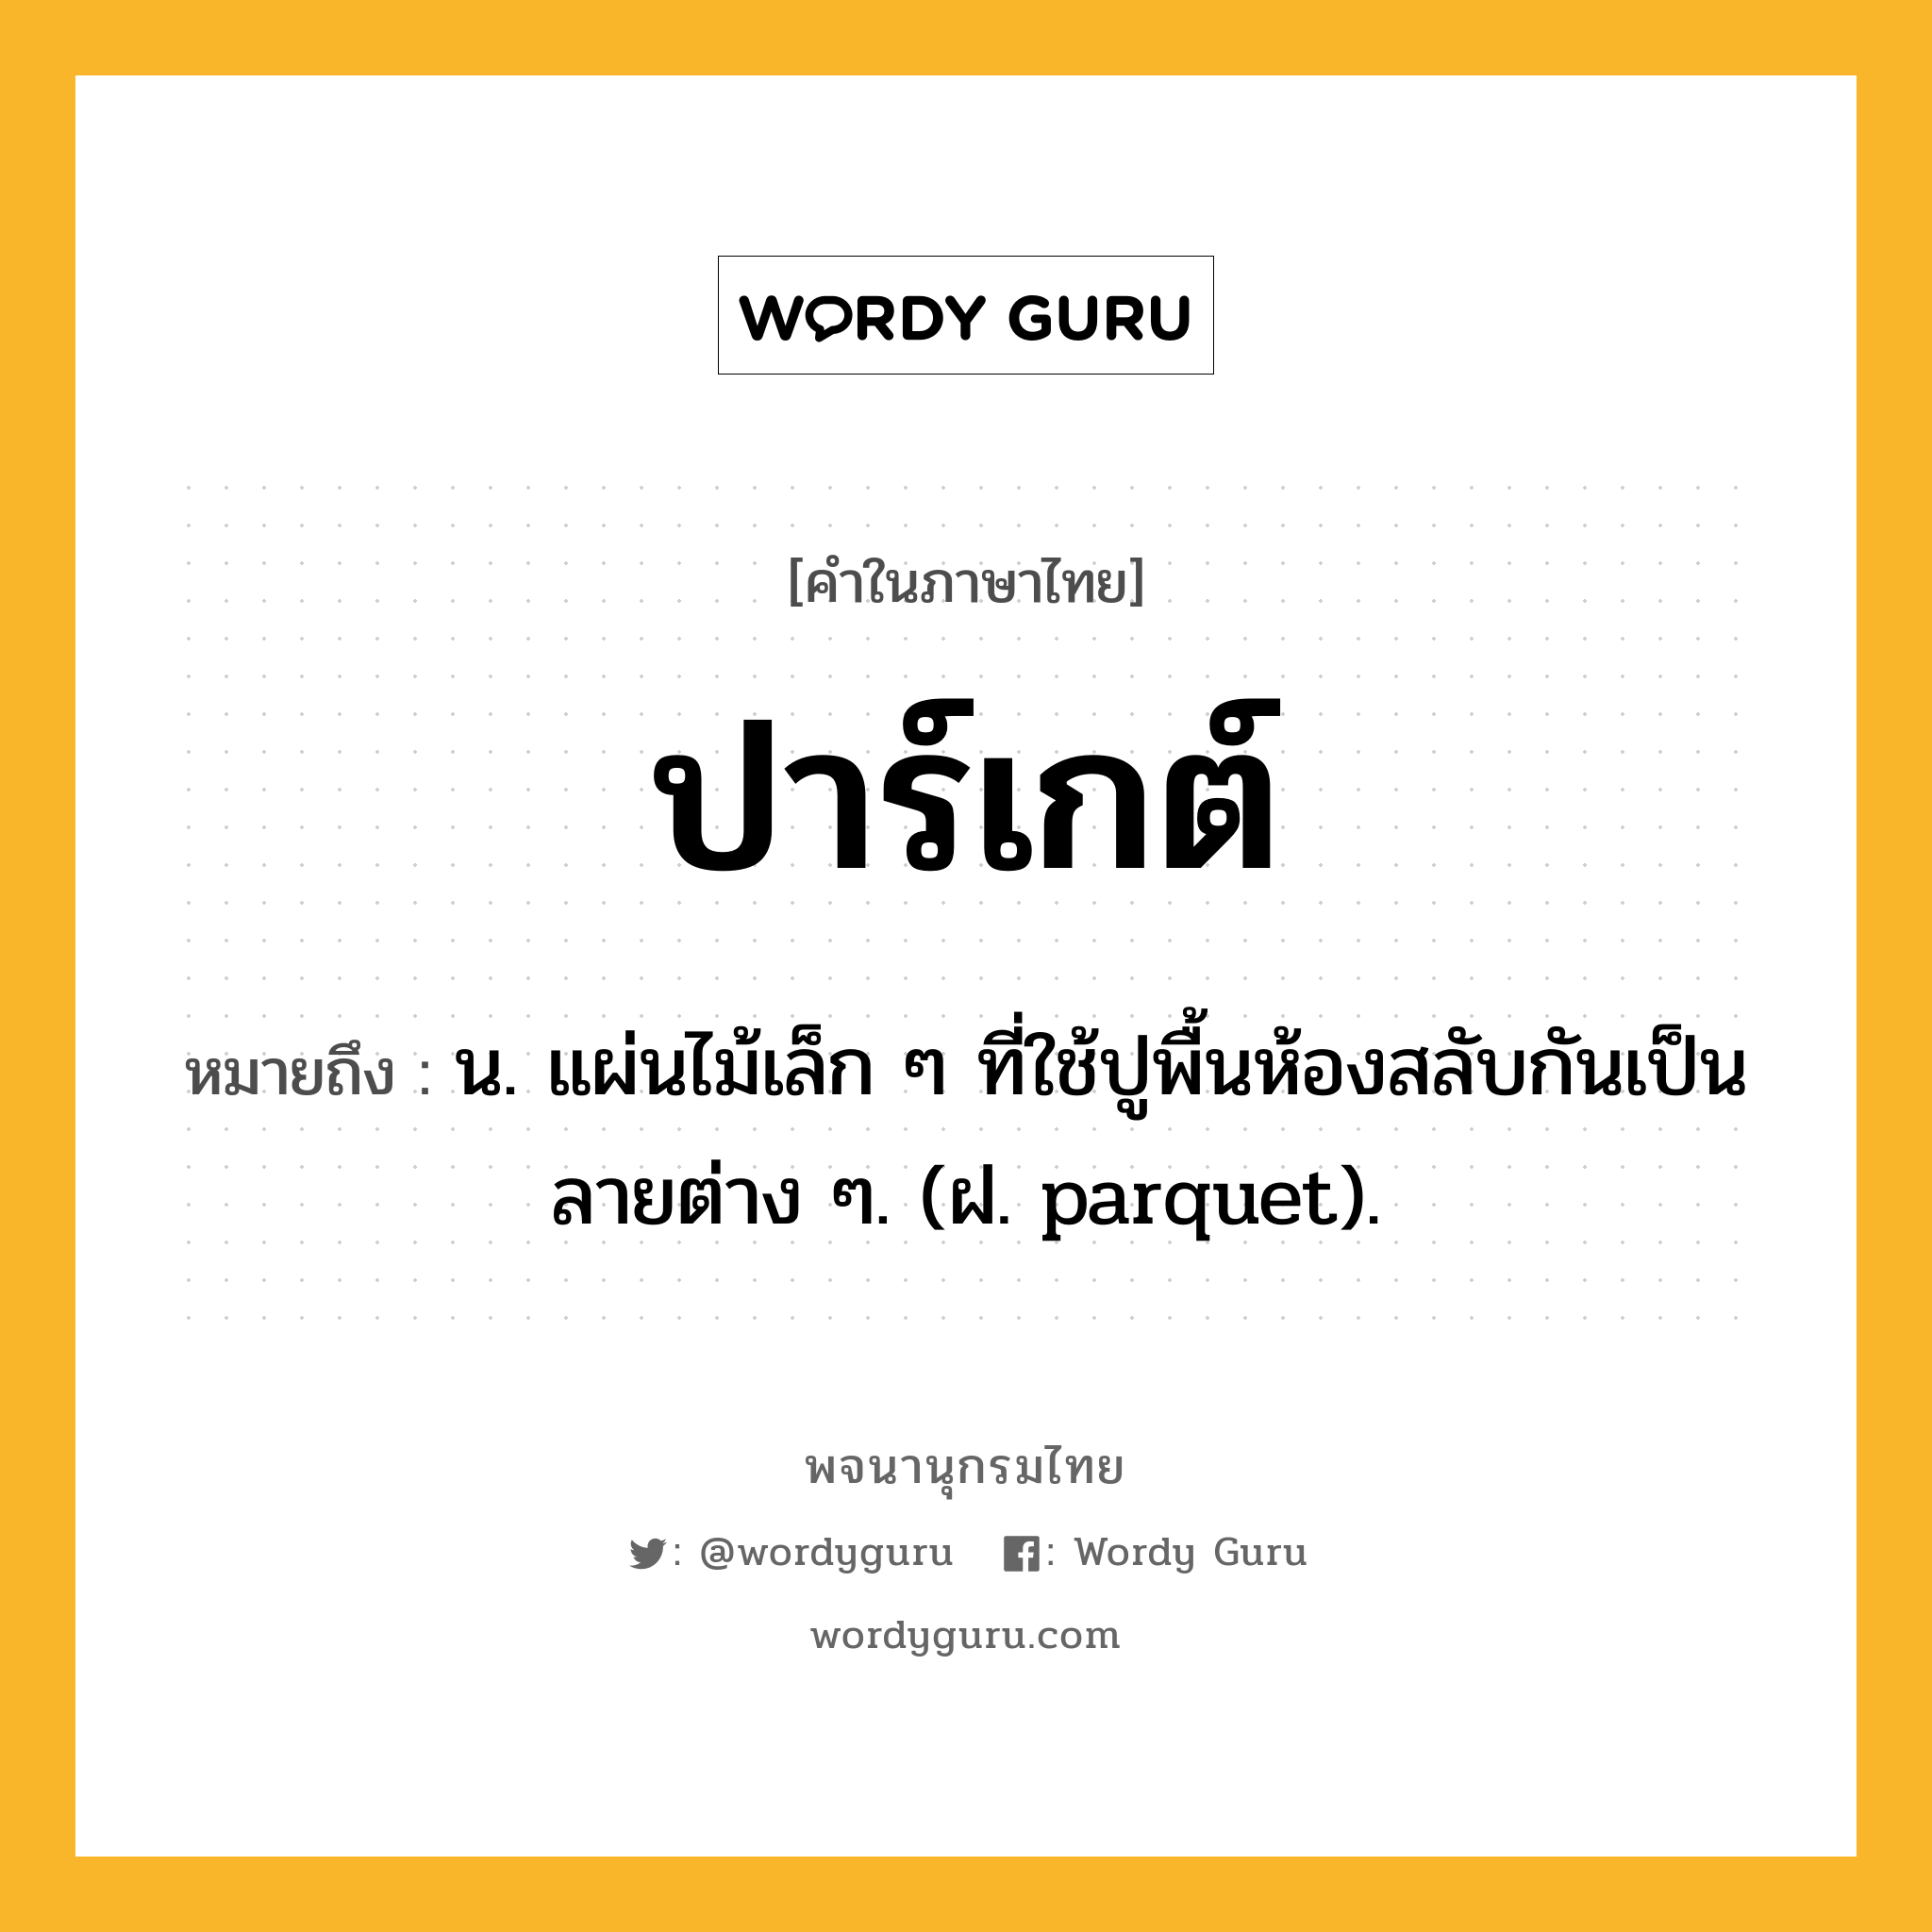 ปาร์เกต์ ความหมาย หมายถึงอะไร?, คำในภาษาไทย ปาร์เกต์ หมายถึง น. แผ่นไม้เล็ก ๆ ที่ใช้ปูพื้นห้องสลับกันเป็นลายต่าง ๆ. (ฝ. parquet).